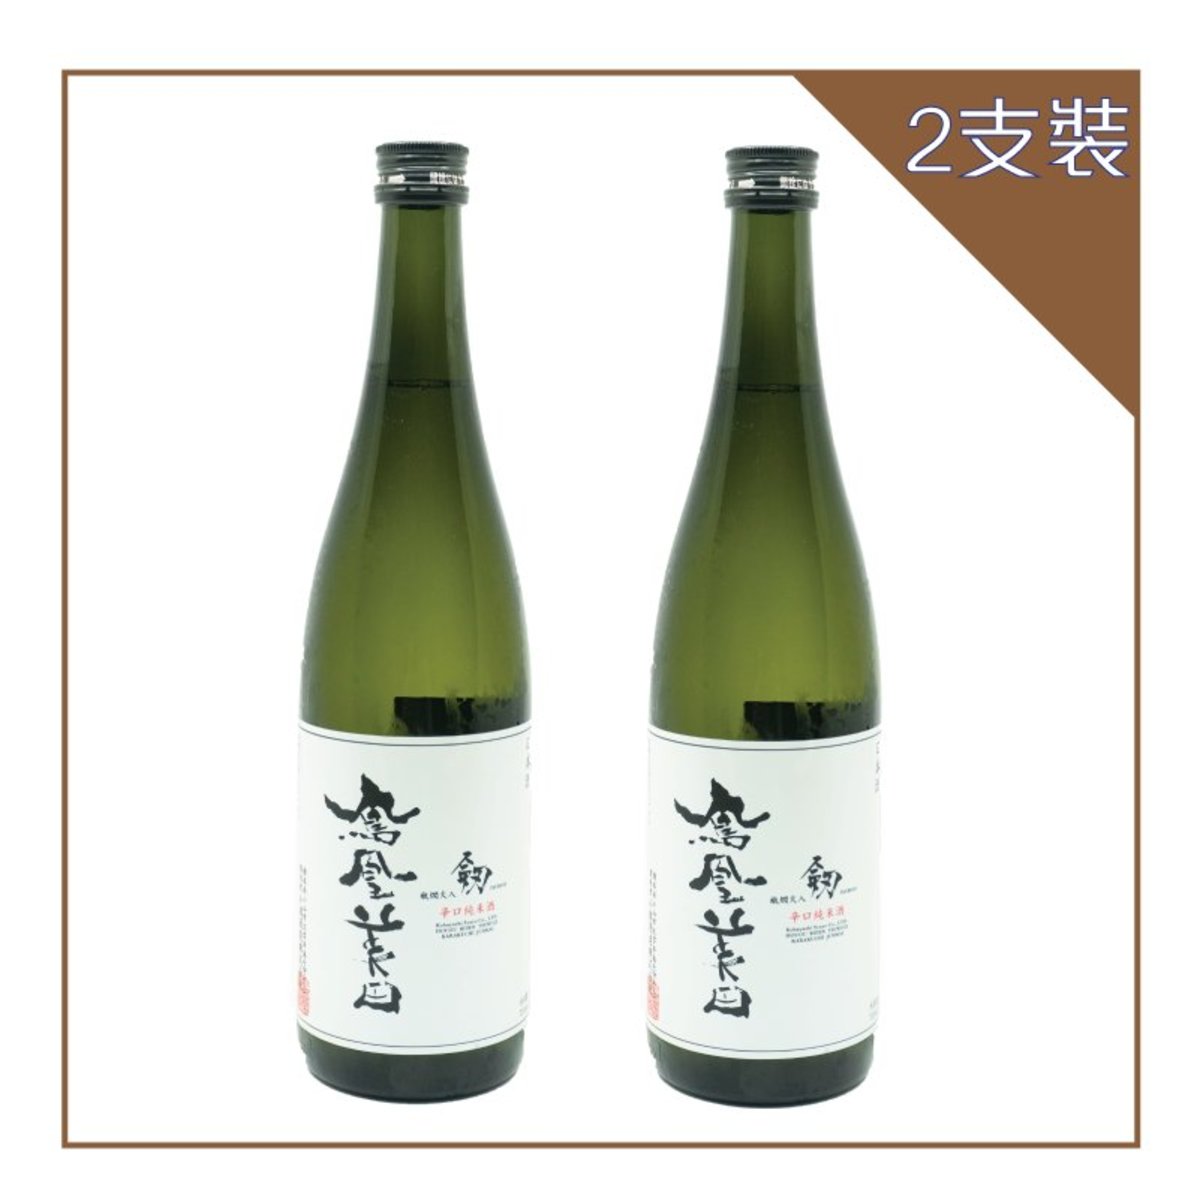 鳳凰美田| 剱辛口純米酒720ML (2支裝) | HKTVmall 香港最大網購平台